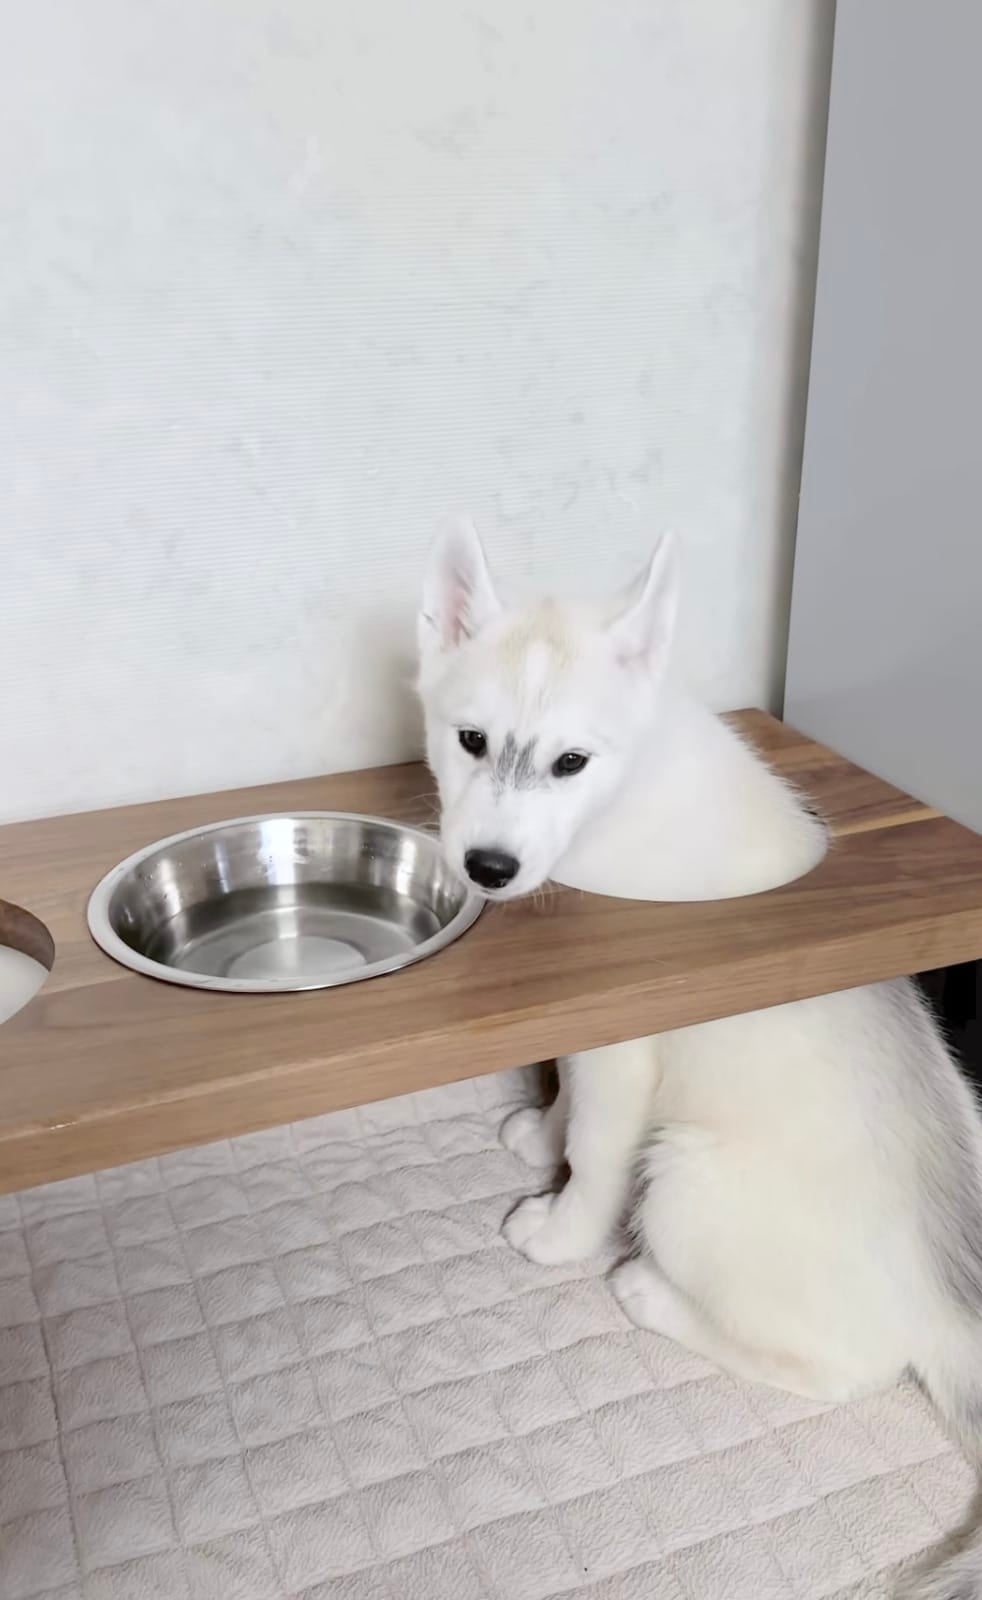 คลิปลูกหมาไซมุดโต๊ะกินน้ำ ใช้โต๊ะกินน้ำแบบผิดวิธี